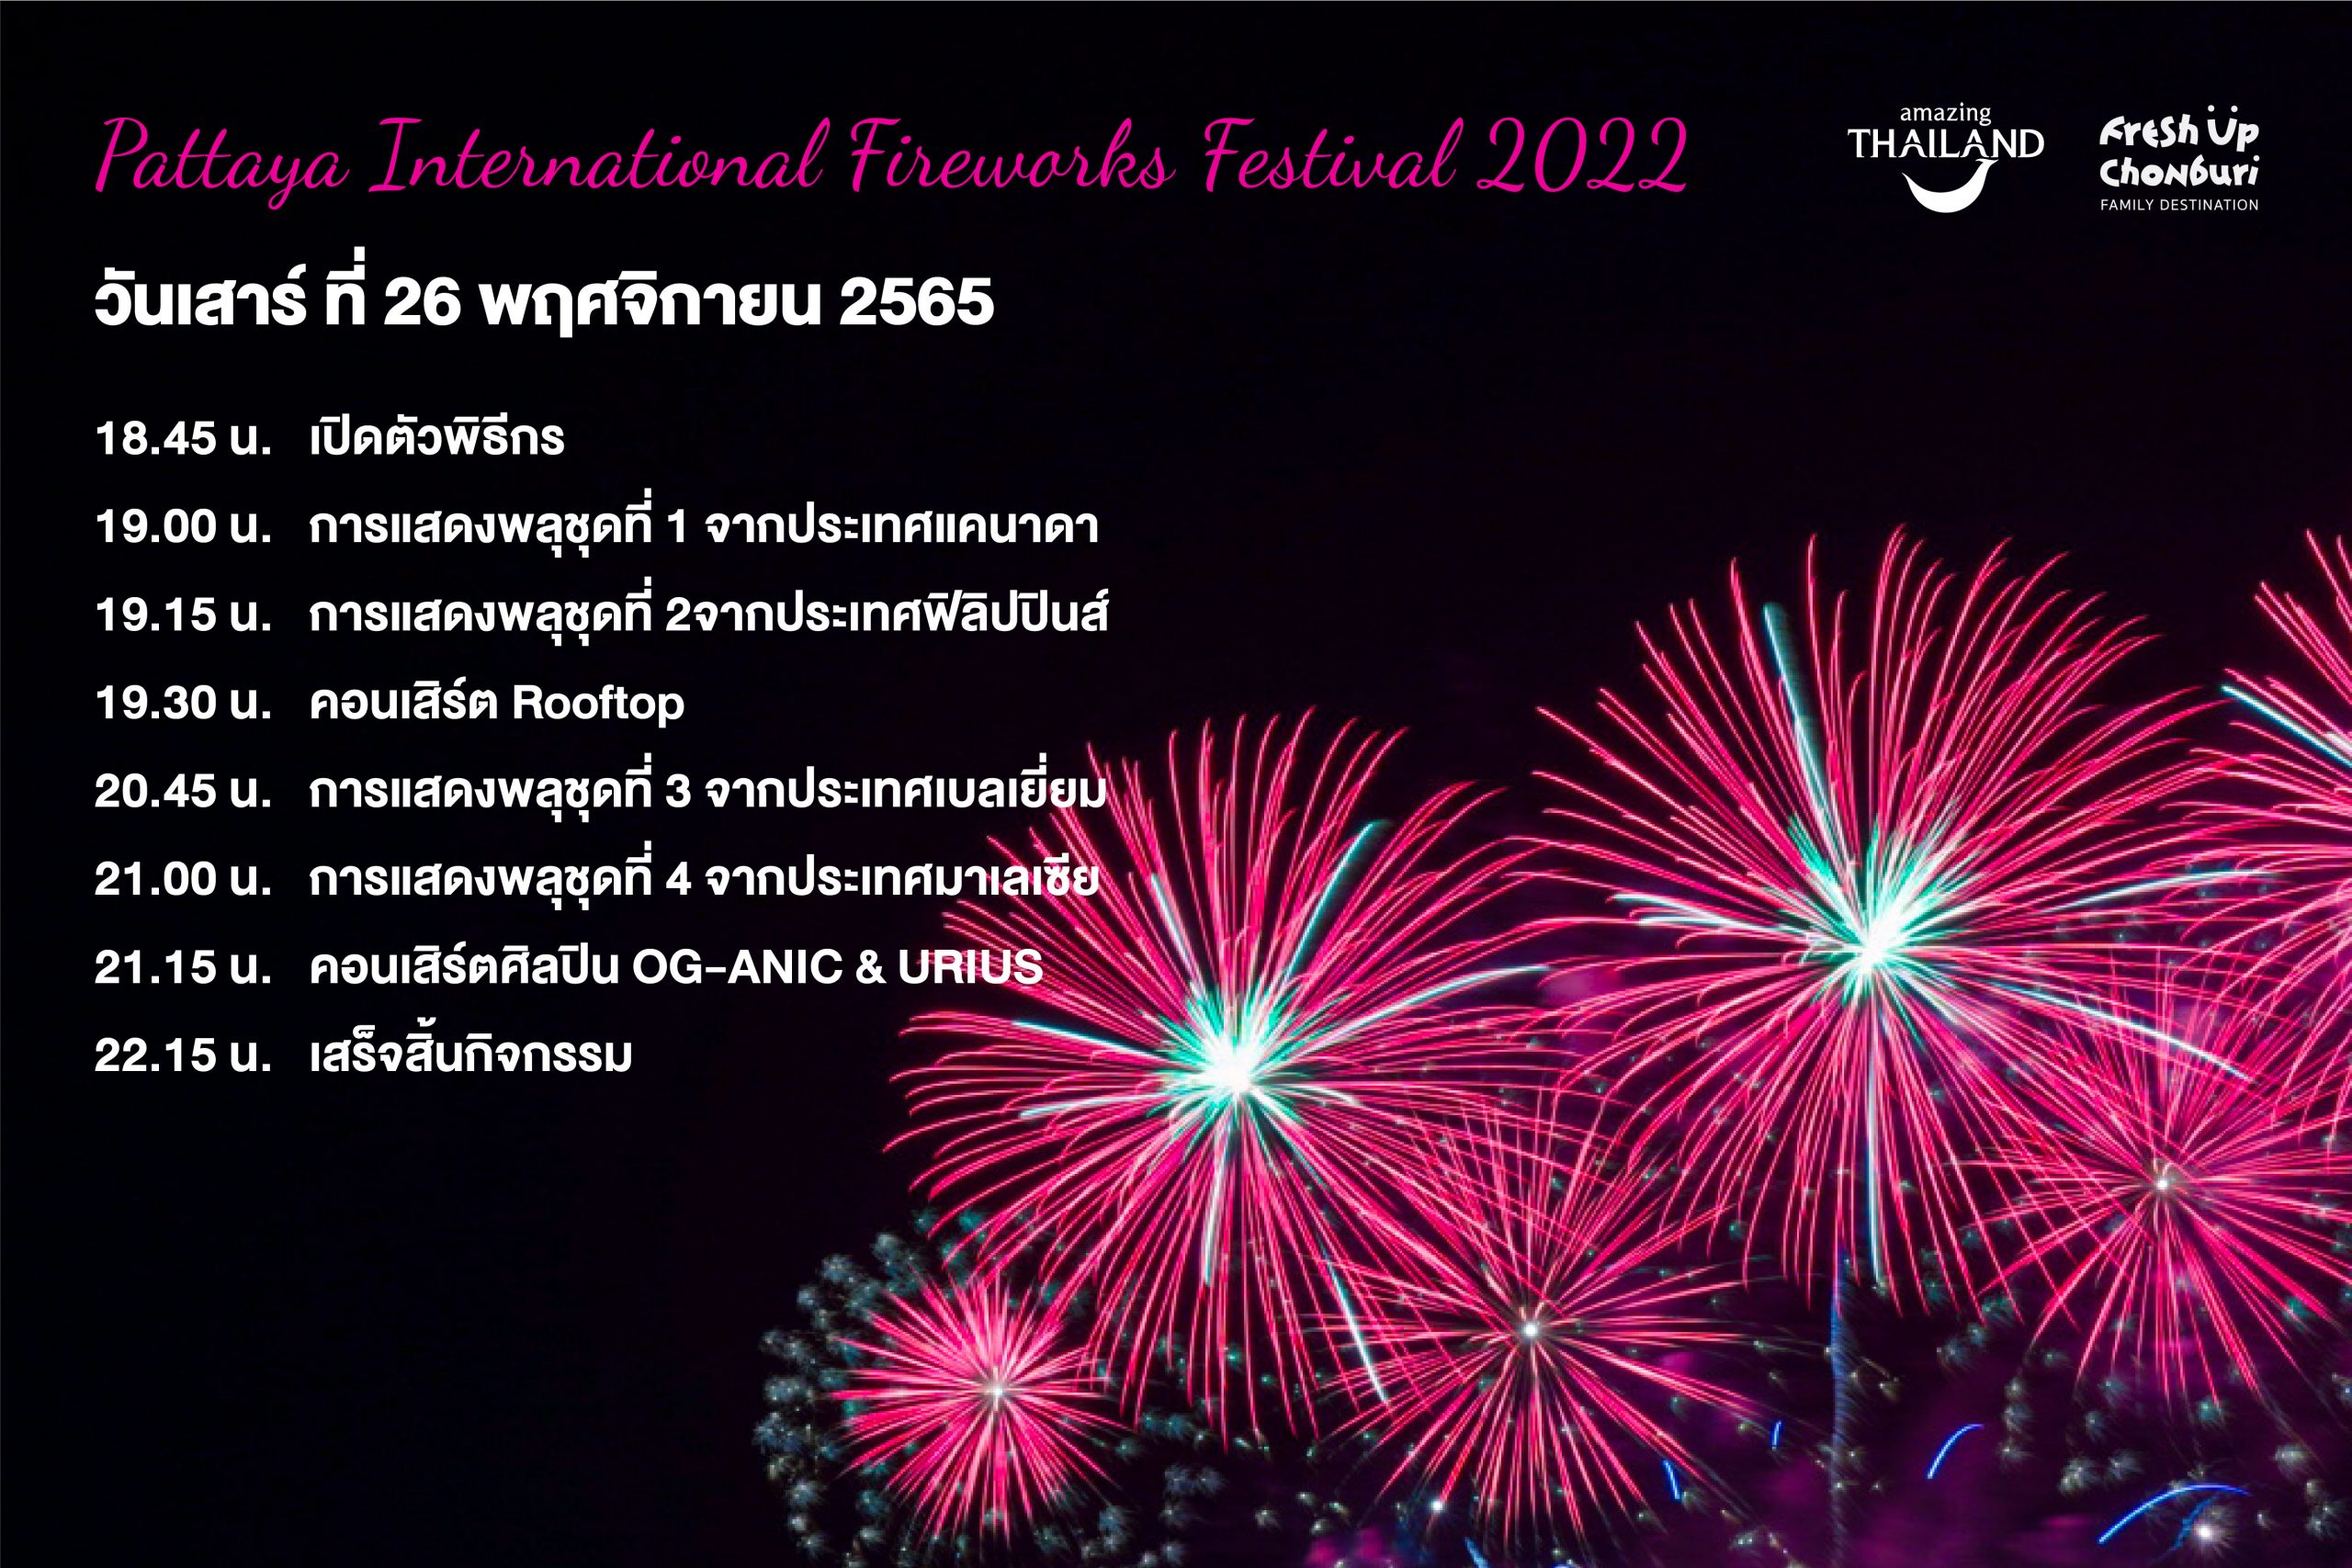 เทศกาลพลุนานาชาติพัทยา 2022 / The Pattaya International Fireworks Festival 2022